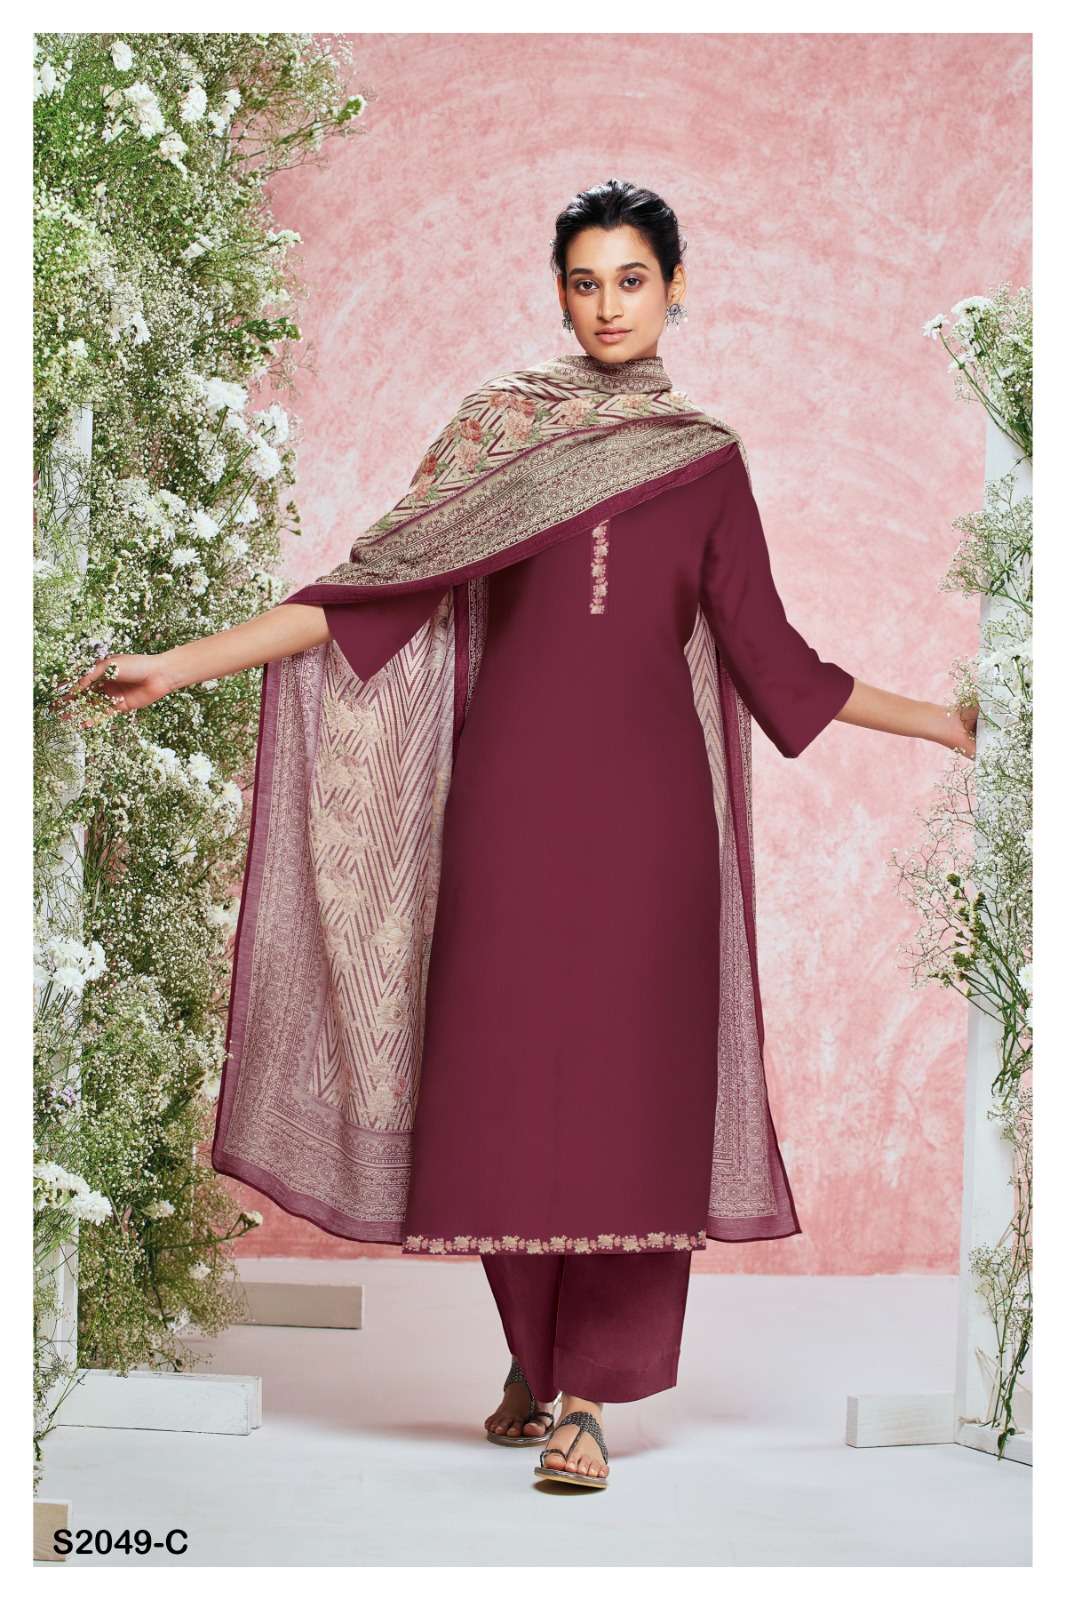 Designer Salwar kameez | Designer Punjab Suits | Pakistani Salwar Kameez |  Pakistani fashion party wear, Stylish party dresses, Velvet dress designs